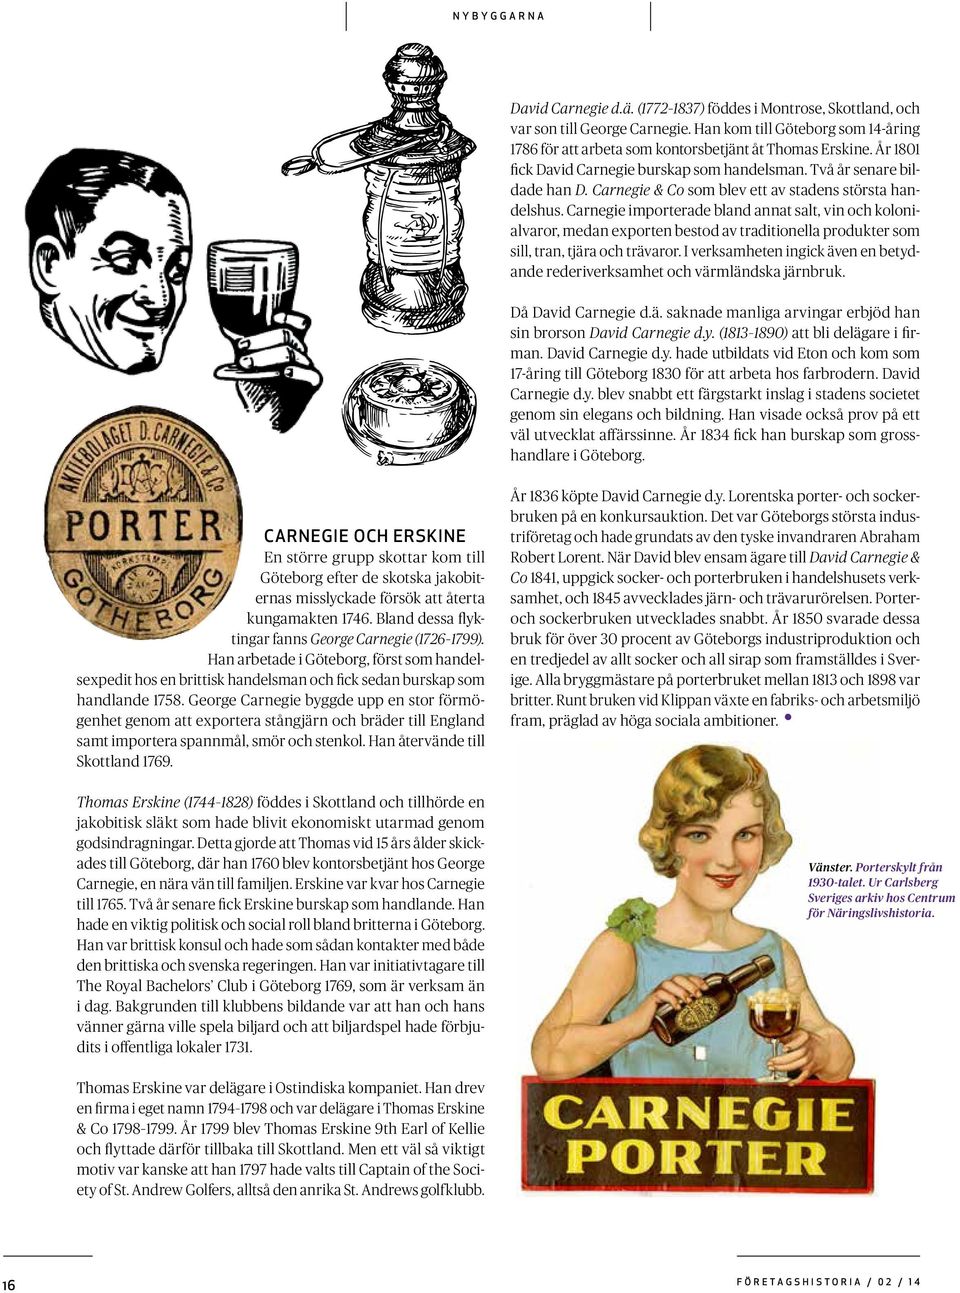 Carnegie importerade bland annat salt, vin och kolonialvaror, medan exporten bestod av traditionella produkter som sill, tran, tjära och trävaror.